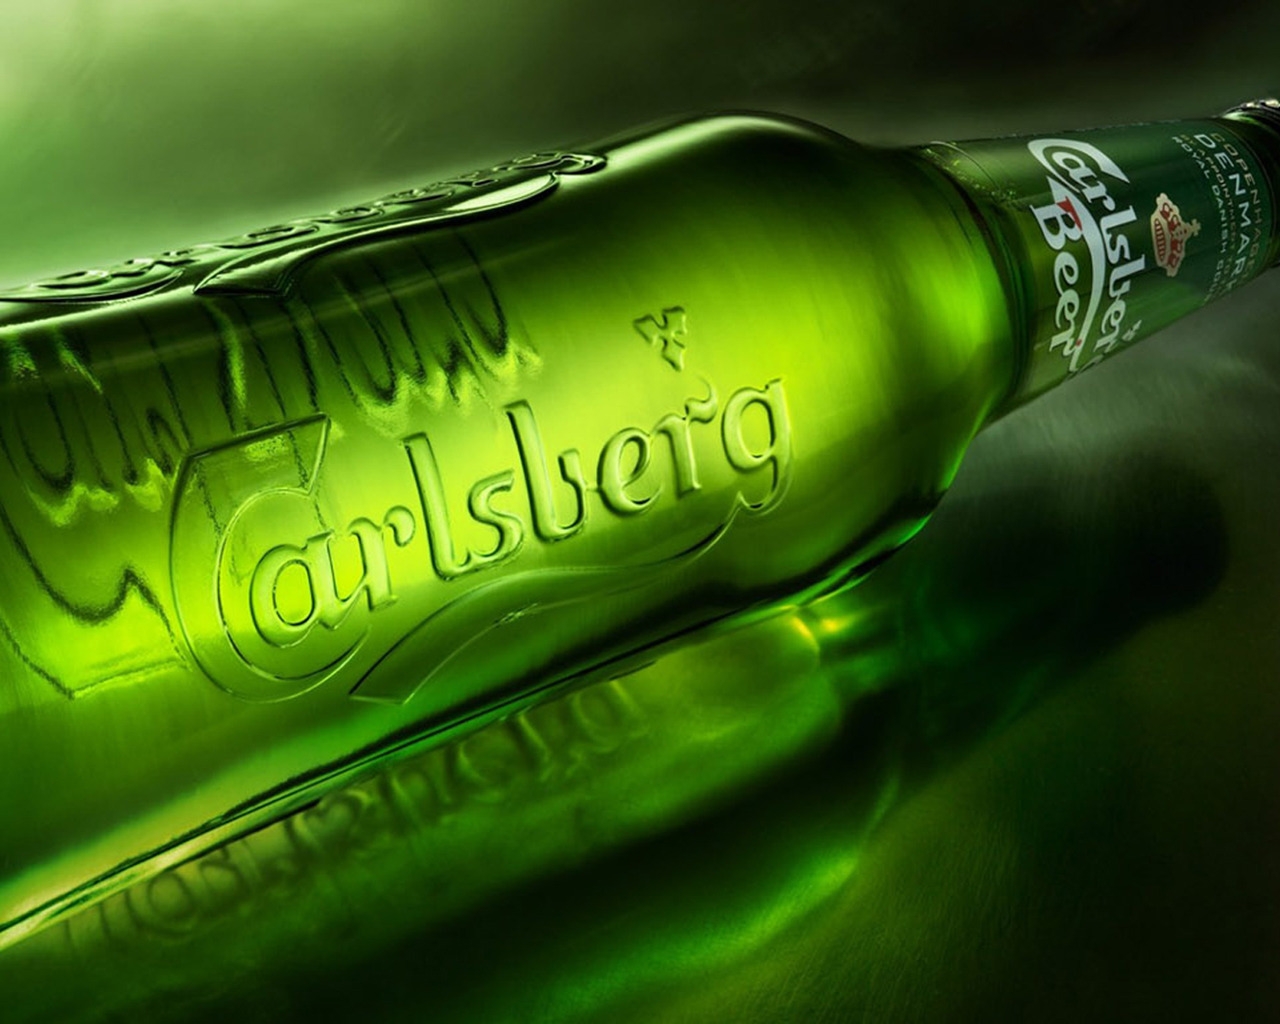 Carlsberg Bottle for 1280 x 1024 resolution